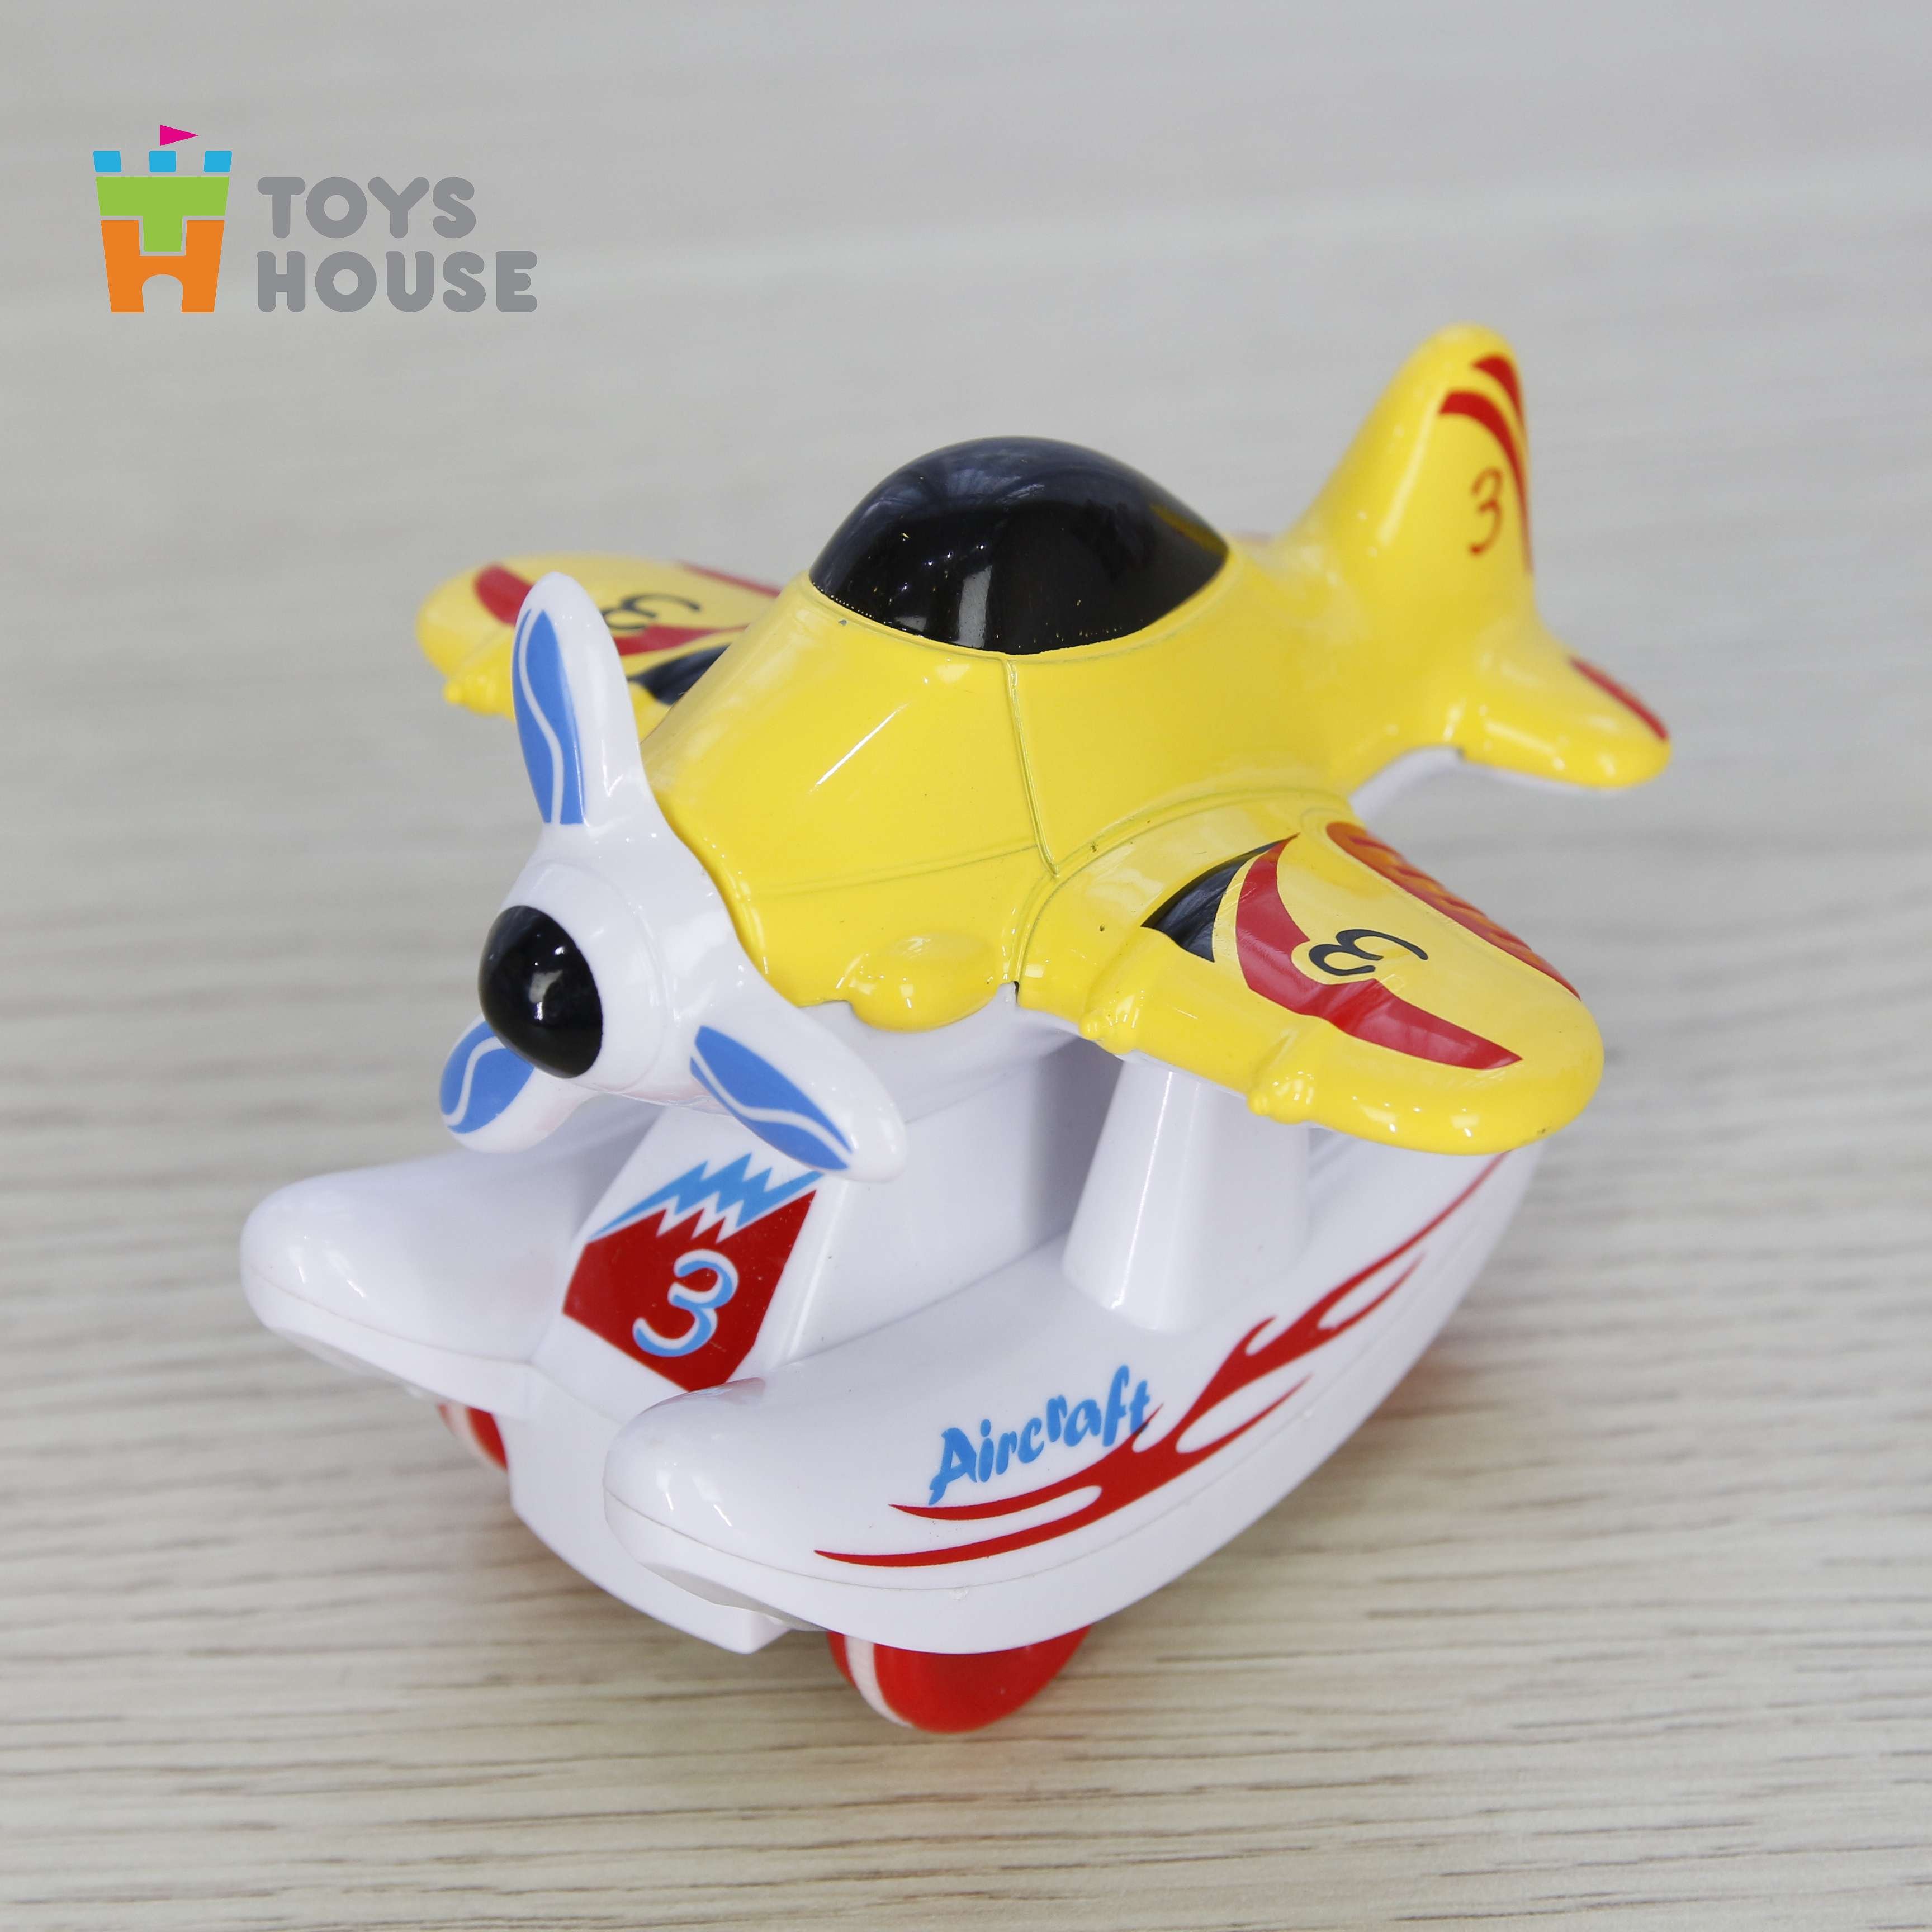 Mô hình máy bay trượt đà Toyshouse chính hãng - đồ chơi nhập vai